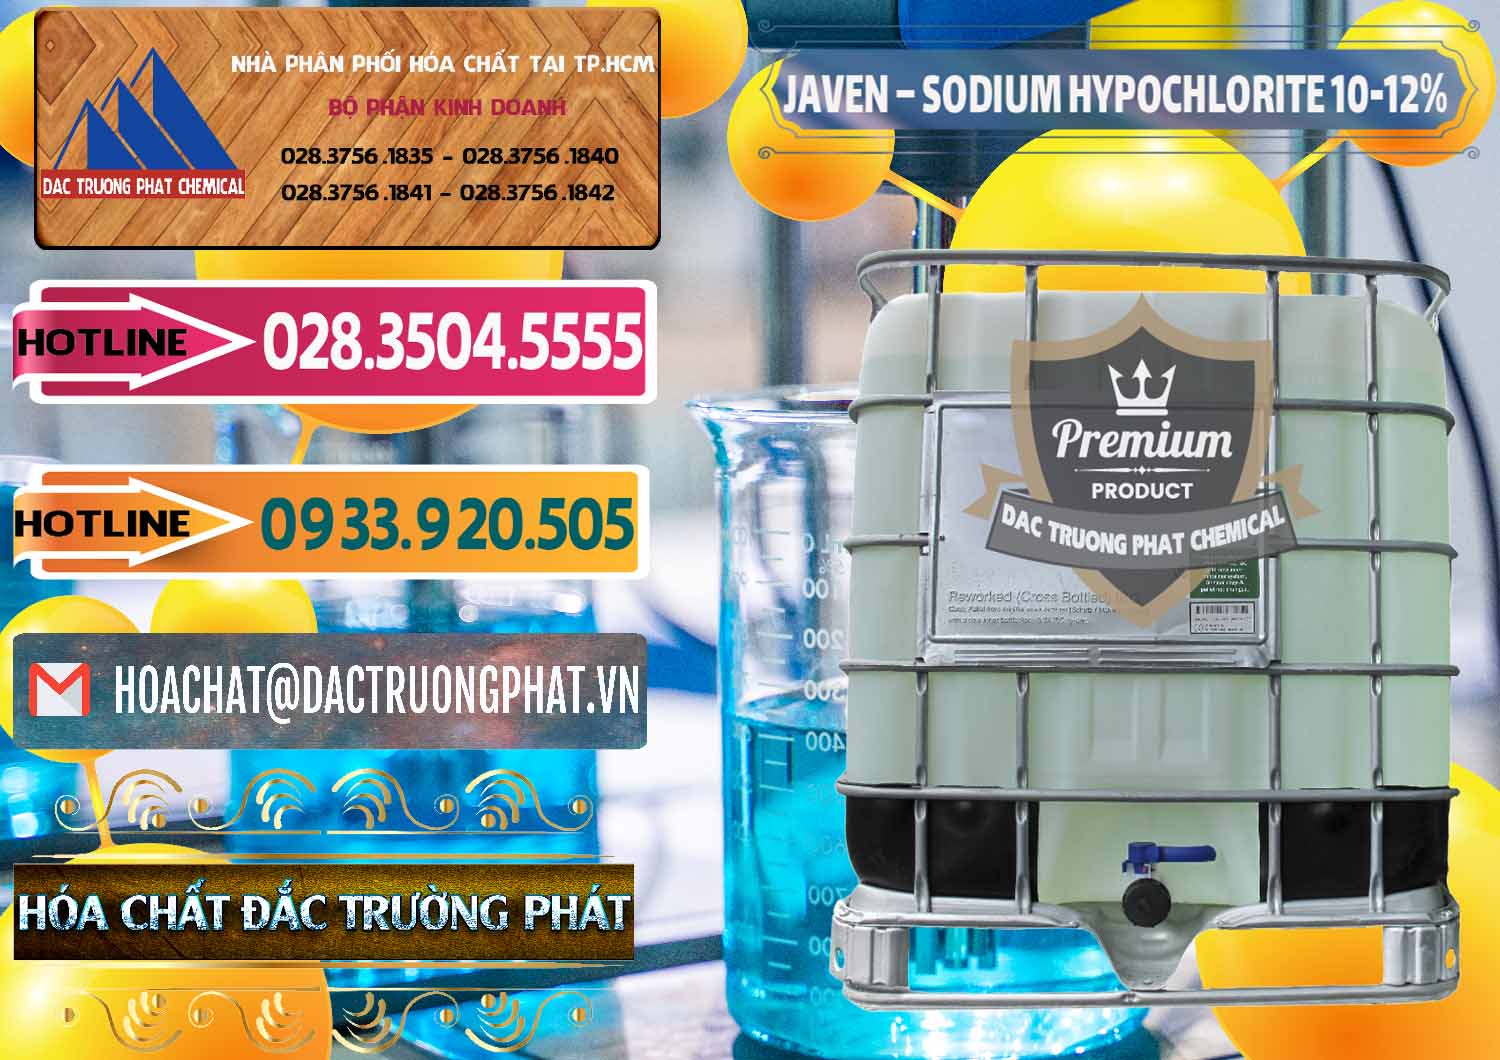 Đơn vị cung cấp & bán Javen - Sodium Hypochlorite 10-12% Việt Nam - 0188 - Nơi chuyên kinh doanh - phân phối hóa chất tại TP.HCM - dactruongphat.vn